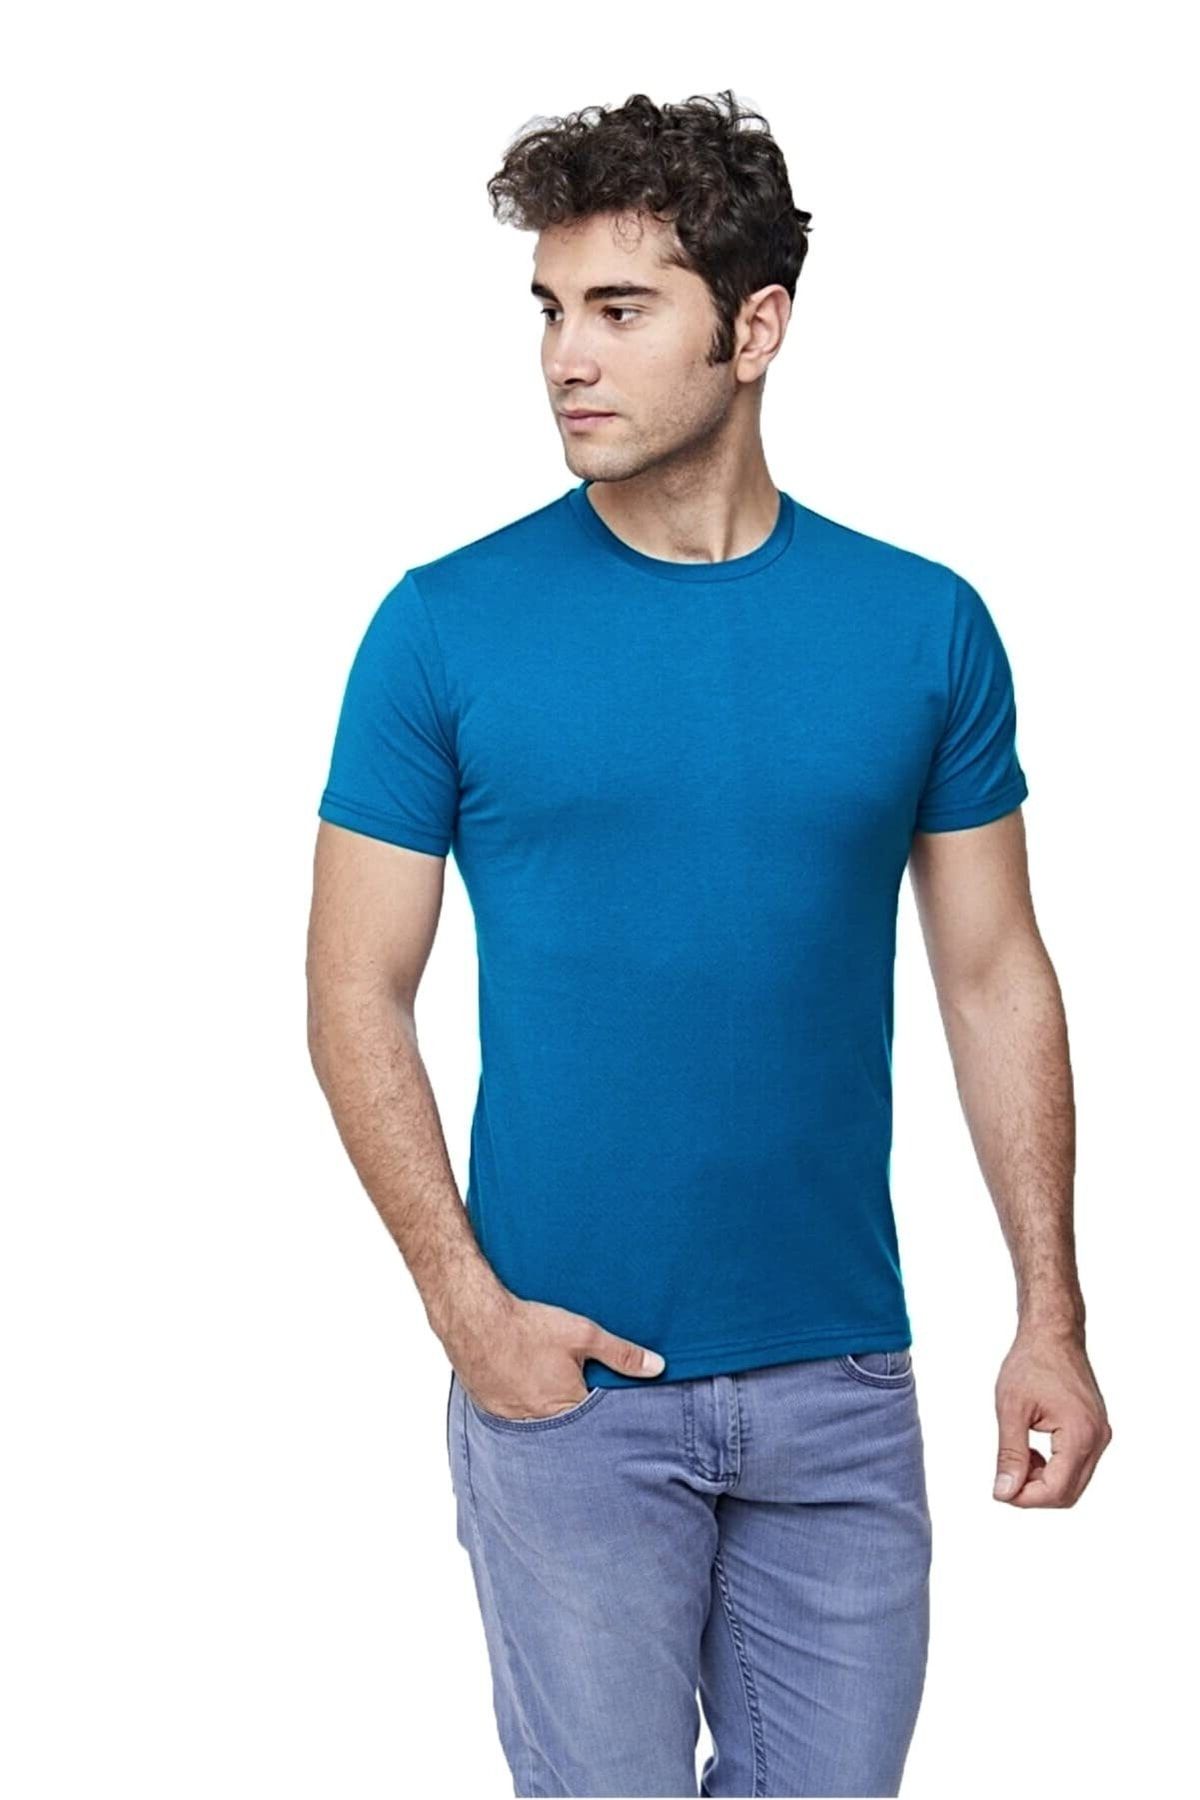 fsm1453 Erkek Pamuklu Kısa Kollu Renkli T-shirt - 421